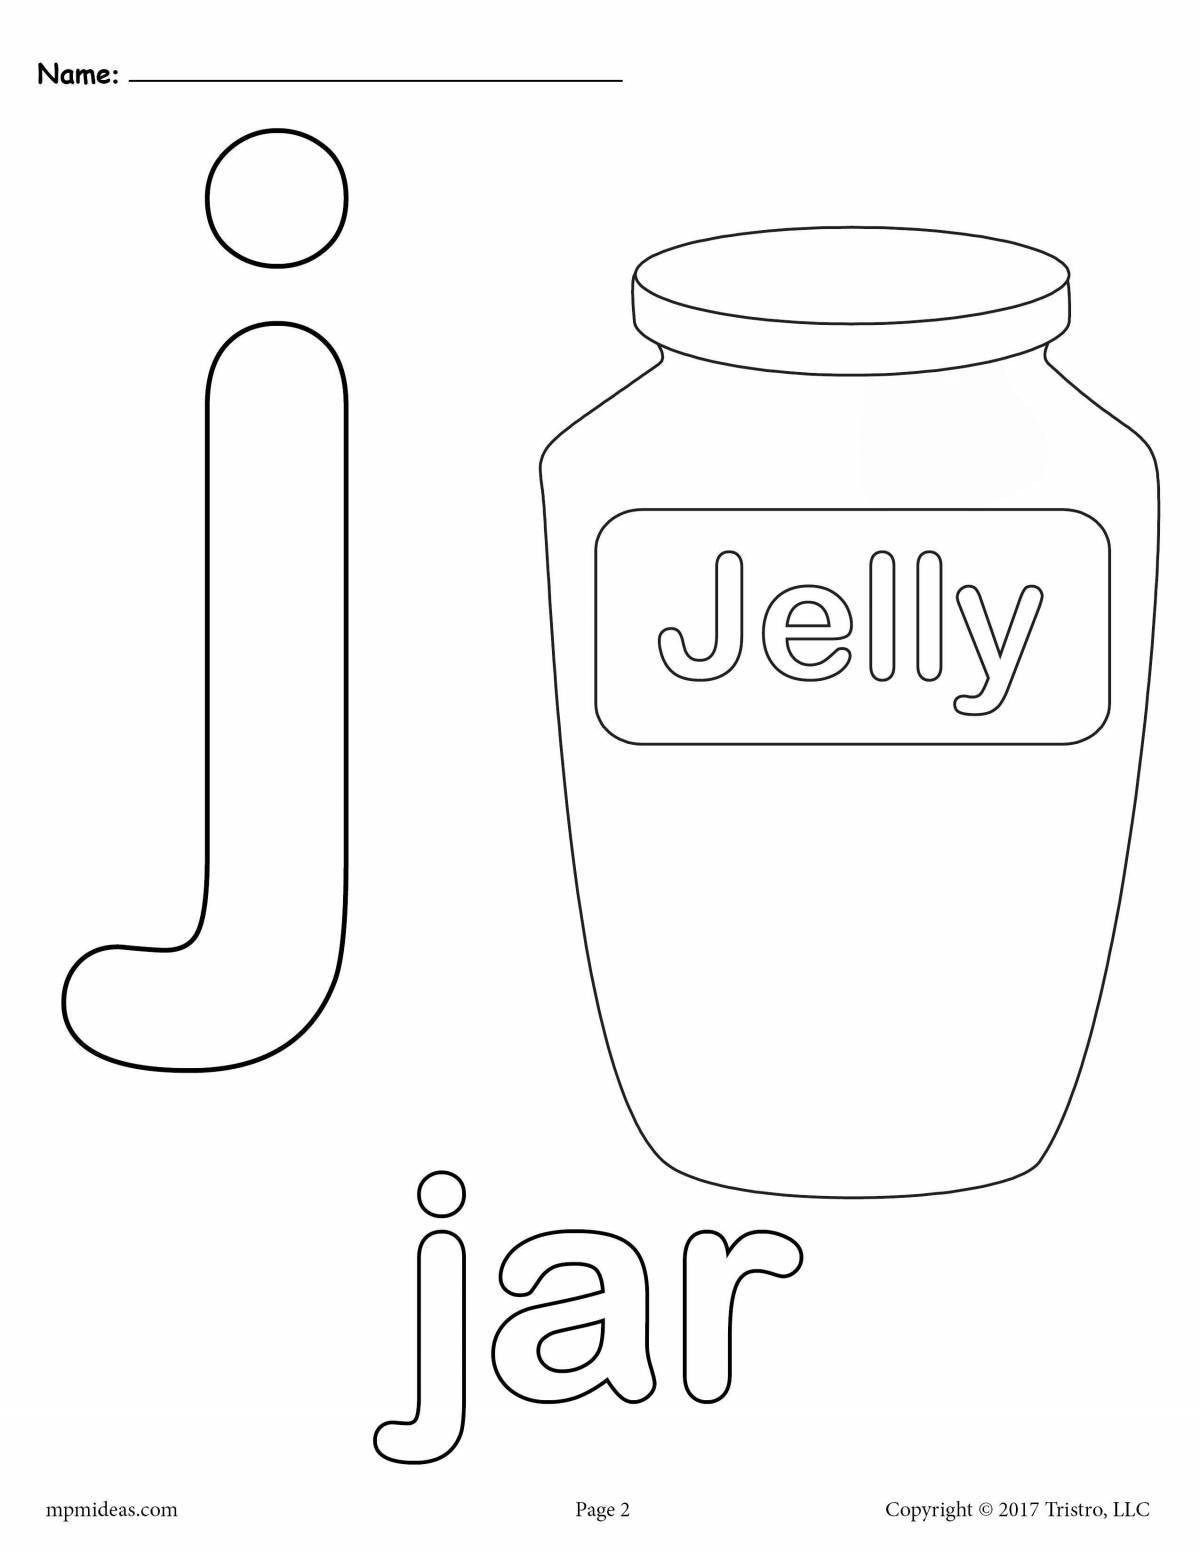 Coloring playful letter j